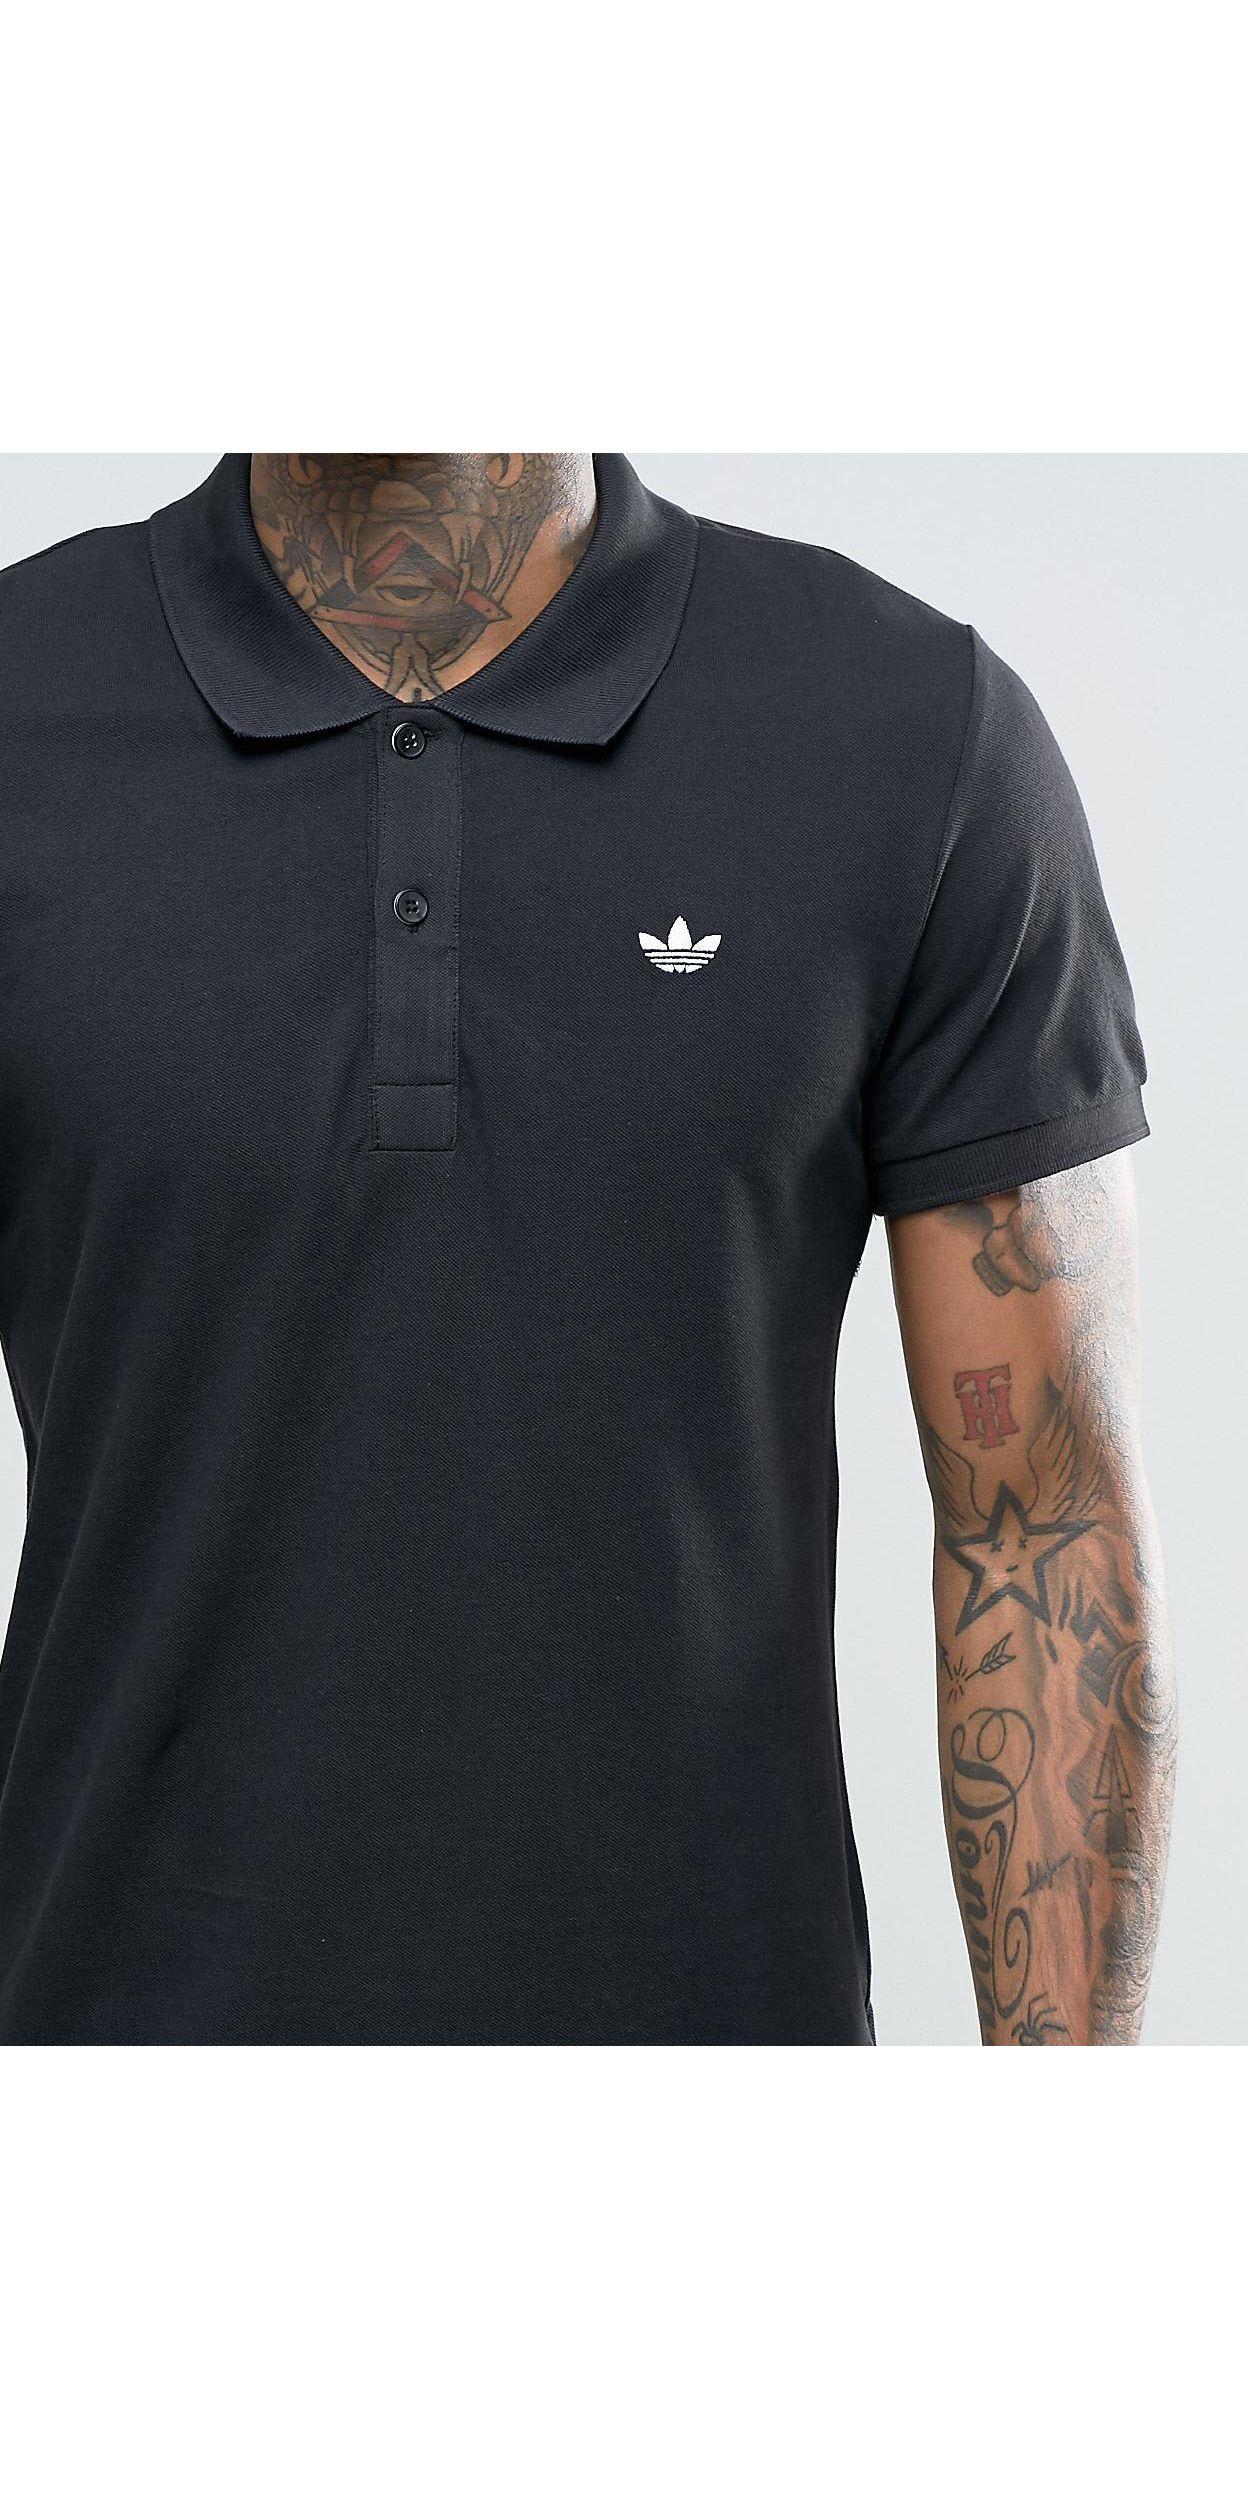 adidas Trefoil Shirt Ab8298 in Black for Men Lyst